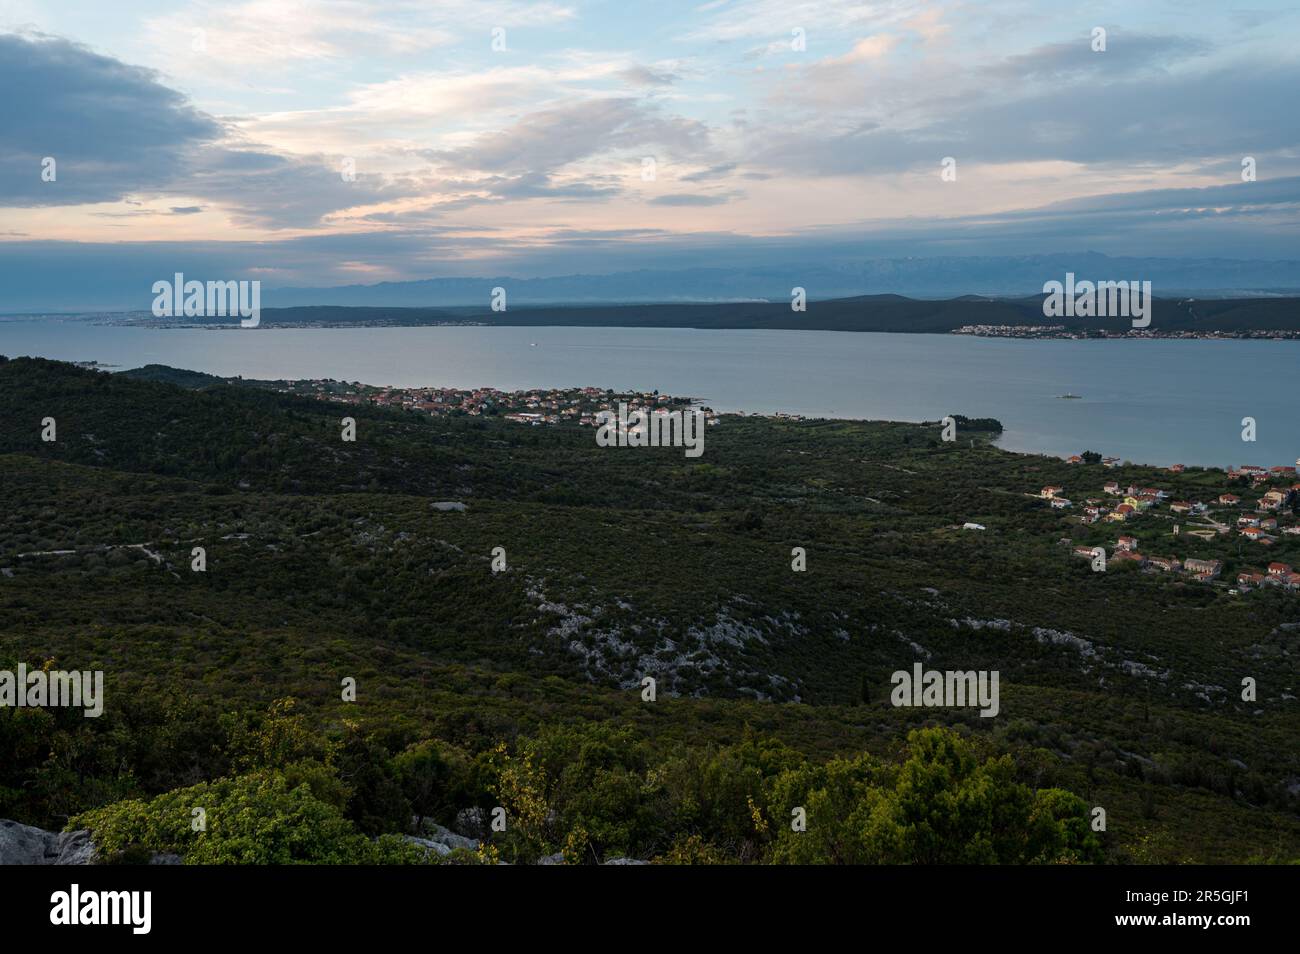 Coucher de soleil spectaculaire sur l'île de la perle de dalmatie Pasman. Destination estivale aridilique de l'île croate. Banque D'Images